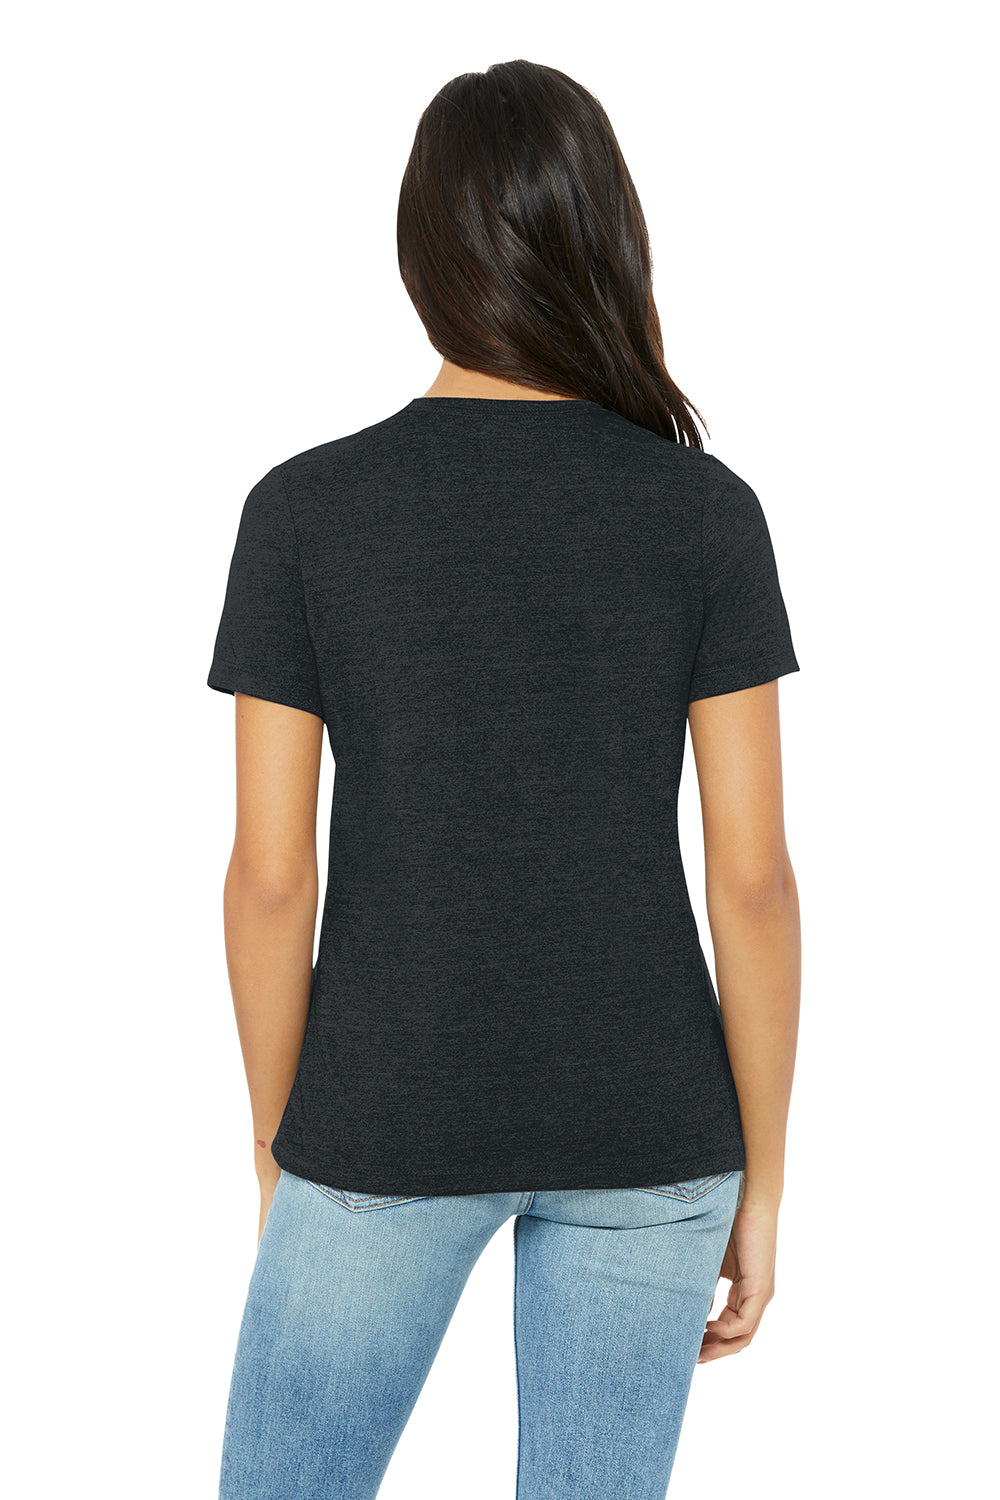 Bella + Canvas BC6400CVC/6400CVC Womens CVC Short Sleeve Crewneck T-Shirt Heather Dark Grey Model Back